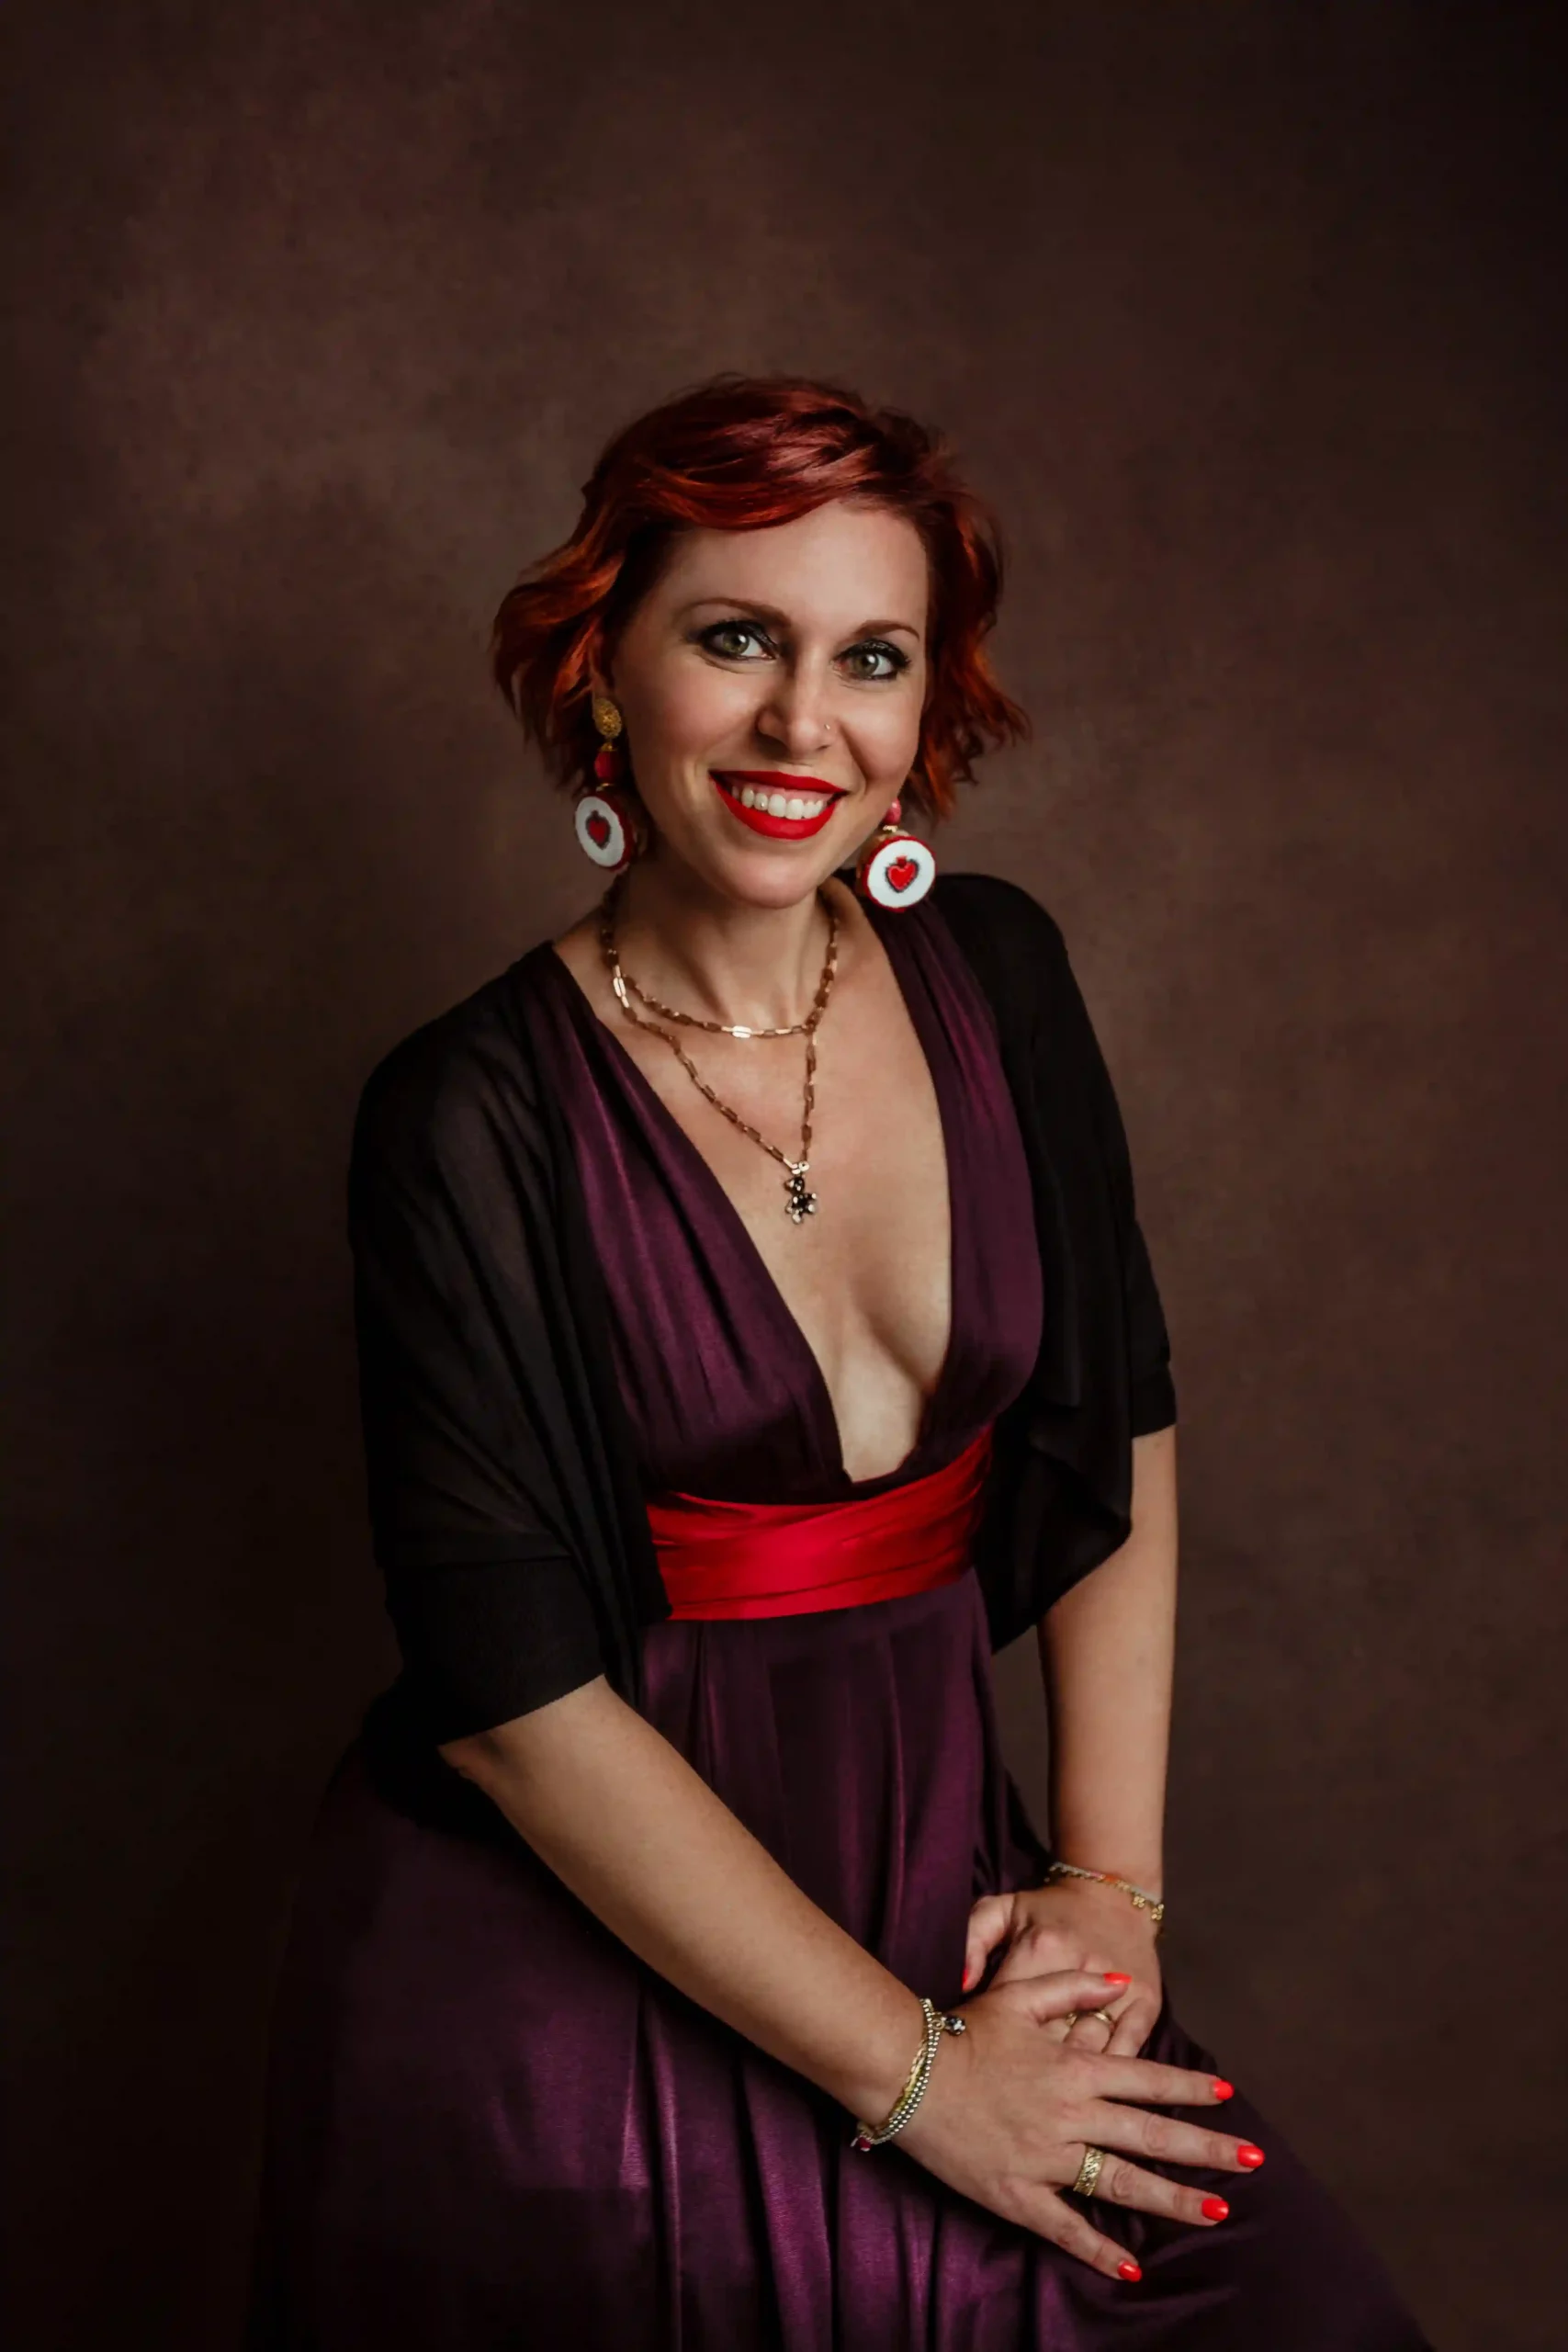 Foto ritrattistica a colori di una donna con un vestito viola e una cintura rossa che sorride. Fotografia a colori Italia